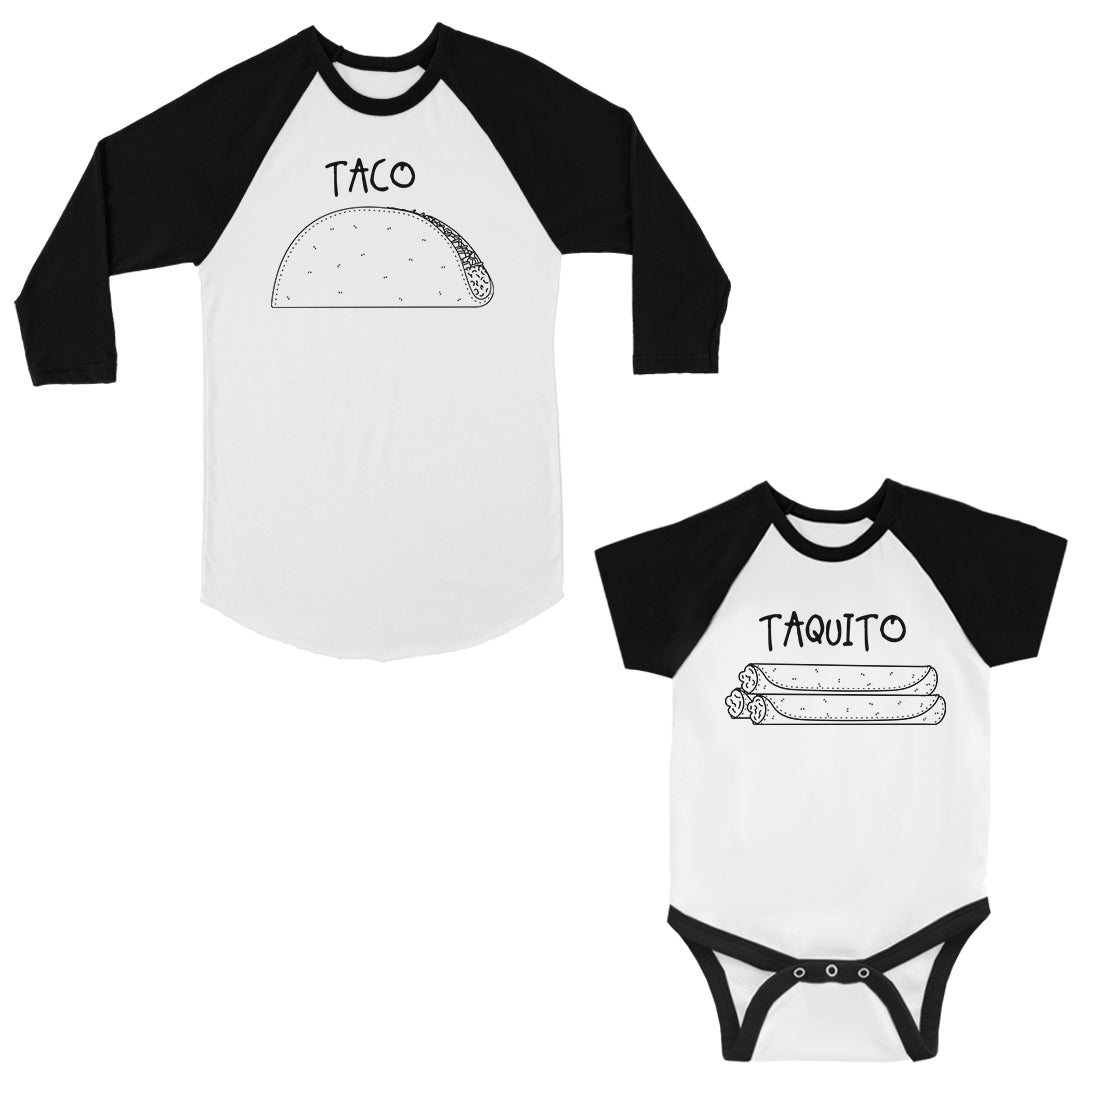 Taco Taquito Dad Baby Matching Baseball Shirts Black and White